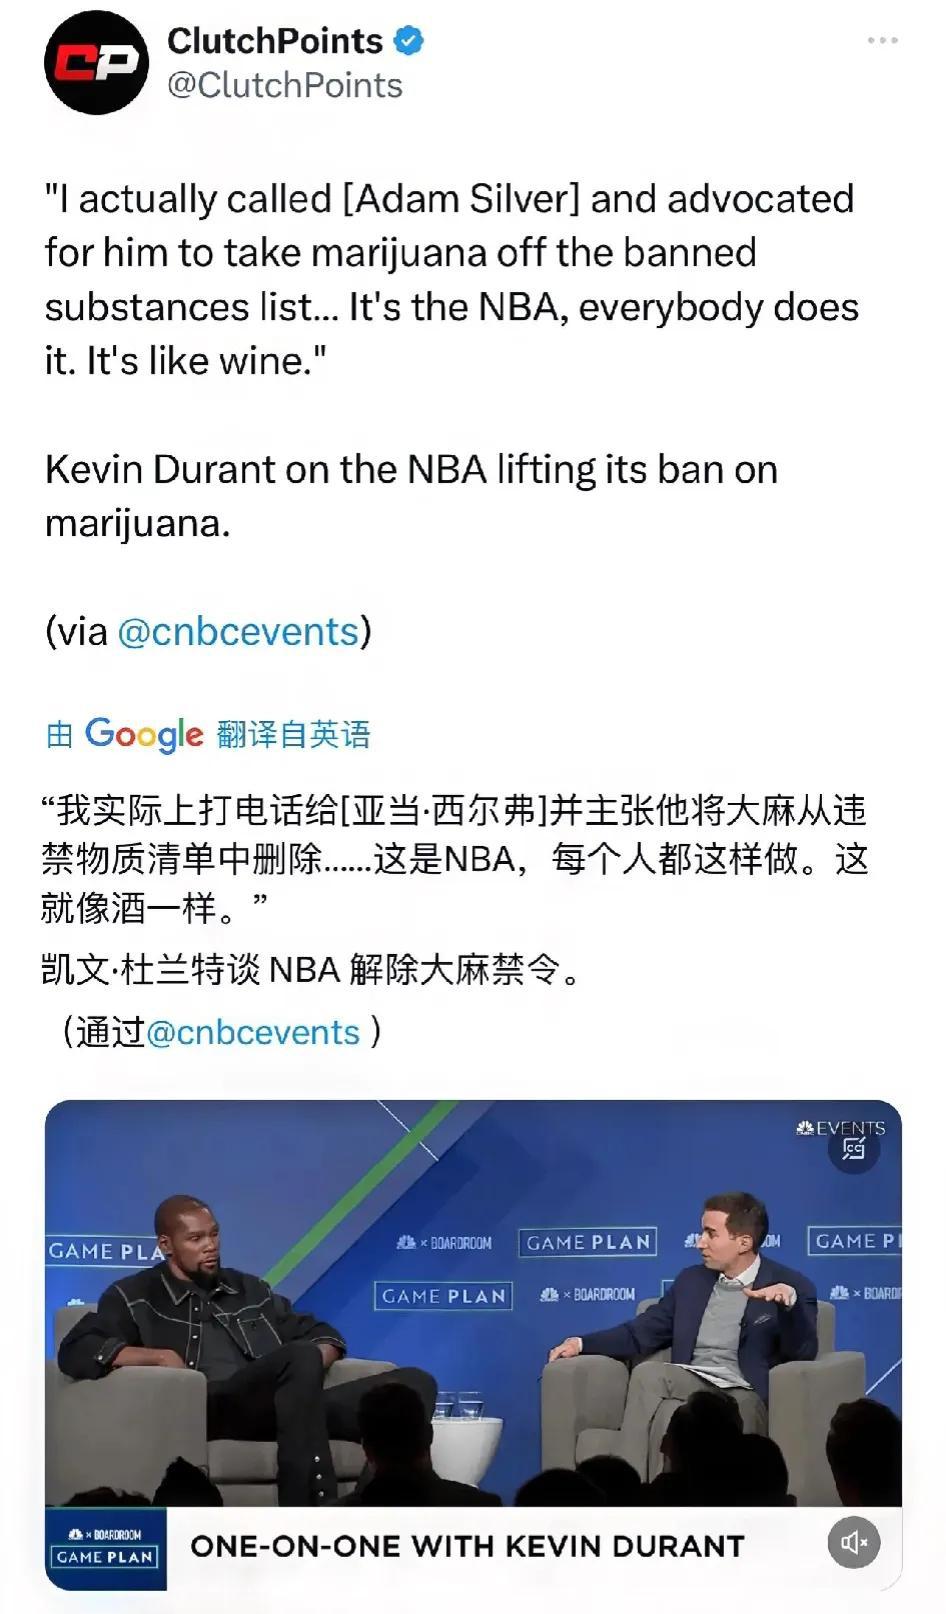 近日杜兰特参加某档节目是说道：“我和萧华就大麻在NBA合法化进行了讨论，萧华也同